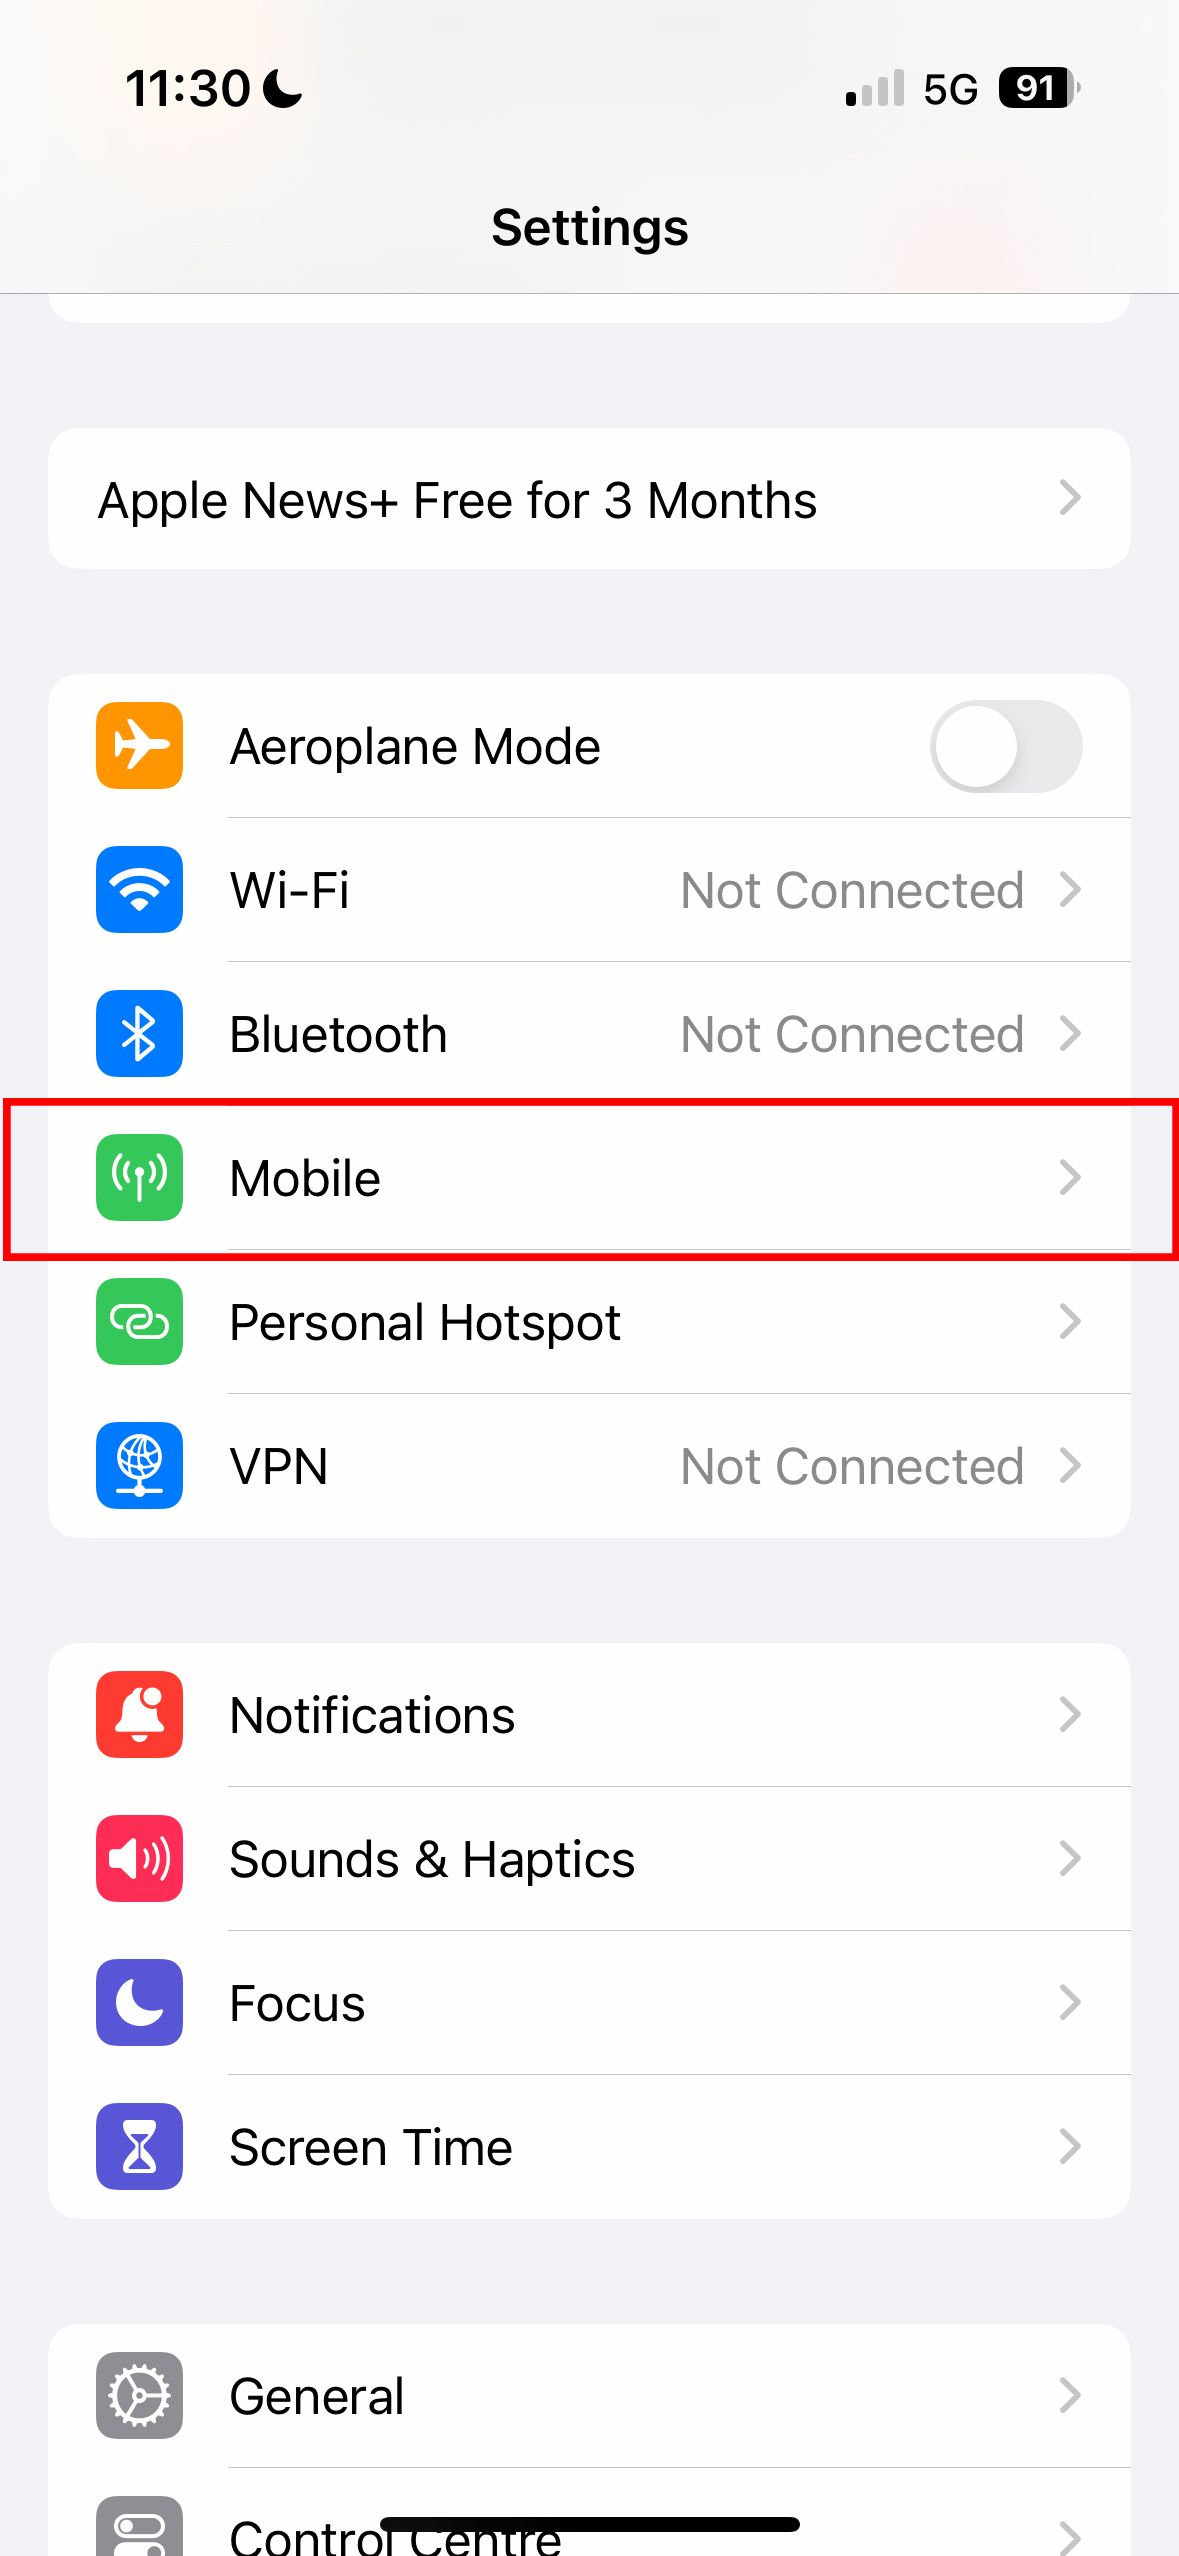   Menu de configurações do iPhone com a opção ‘Celular’ destacada, indicando a seção onde os usuários podem gerenciar as configurações de dados móveis dos aplicativos.